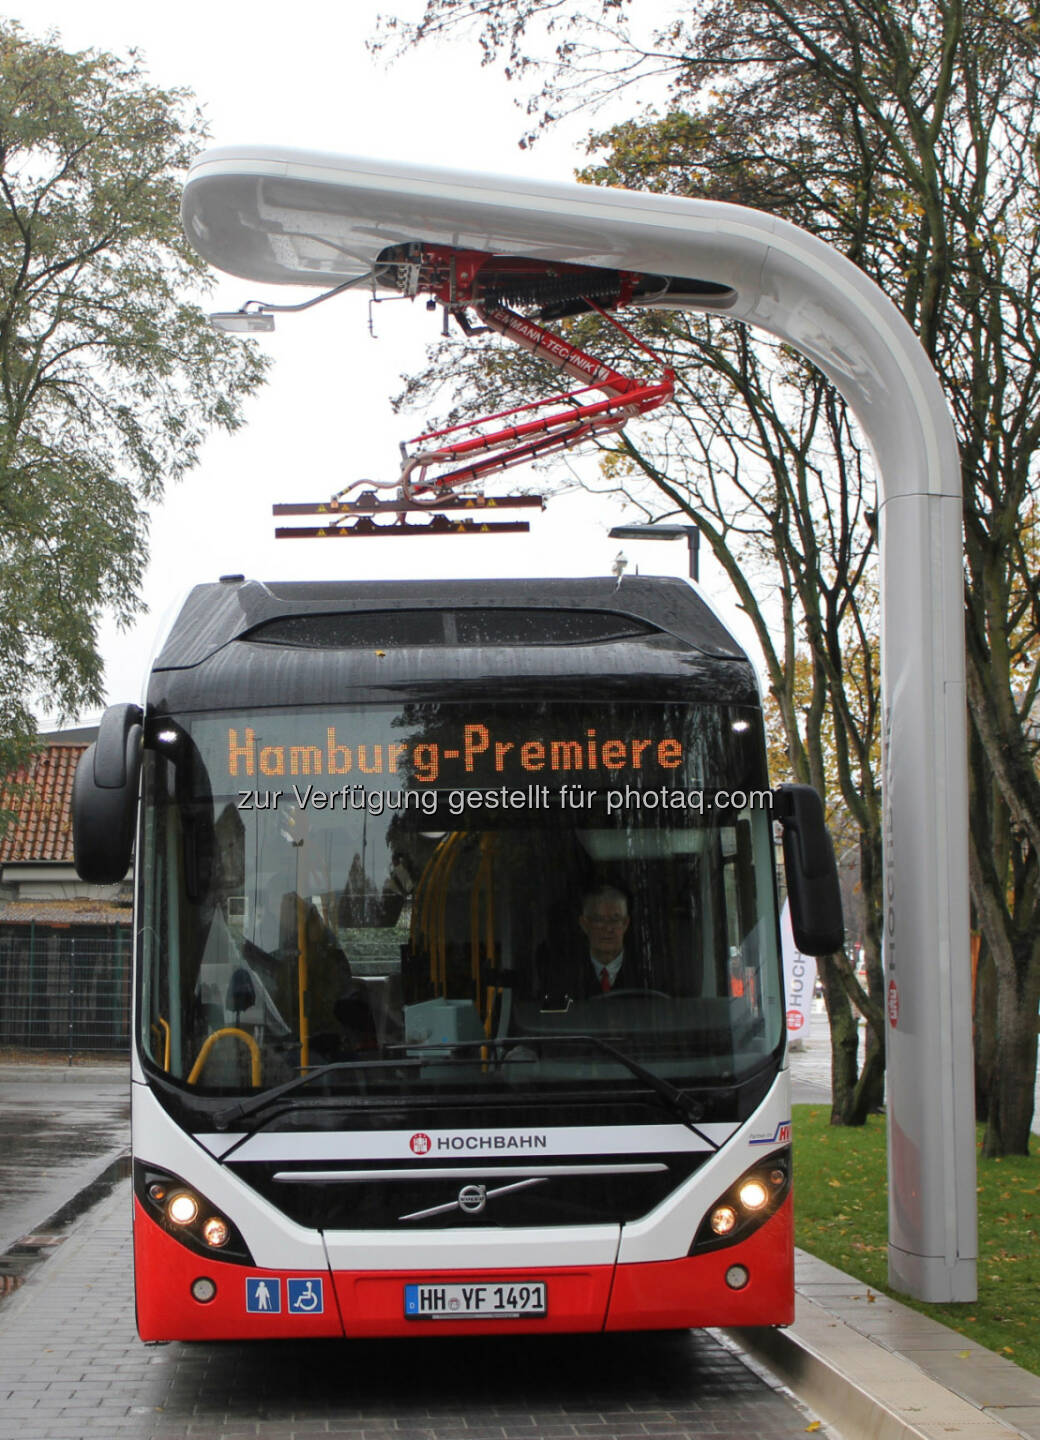 Die Hamburger Hochbahn AG präsentierte den neuen Elektro-Hybridbus für die Hamburger Innenstadt. Der neue Volvo-Bus verfügt über Plug-in-Technologie und wird von einem Siemens-Ladesystem mit Strom versorgt. Die Schnellladestationen sind die neueste Entwicklung von Siemens für Volvo Busse und Siemens kooperieren bei Elektrobussystemen: Hochleistungsladesysteme für Elektrobusse. Der Elektro-Hybridbus soll ab Dezember circa sieben Kilometer rein elektrisch und damit schadstofffrei auf der Innovationslinie 109 zwischen Alsterdorf und dem neu errichteten Elektrobus-Terminal durch Hamburg fahren.

